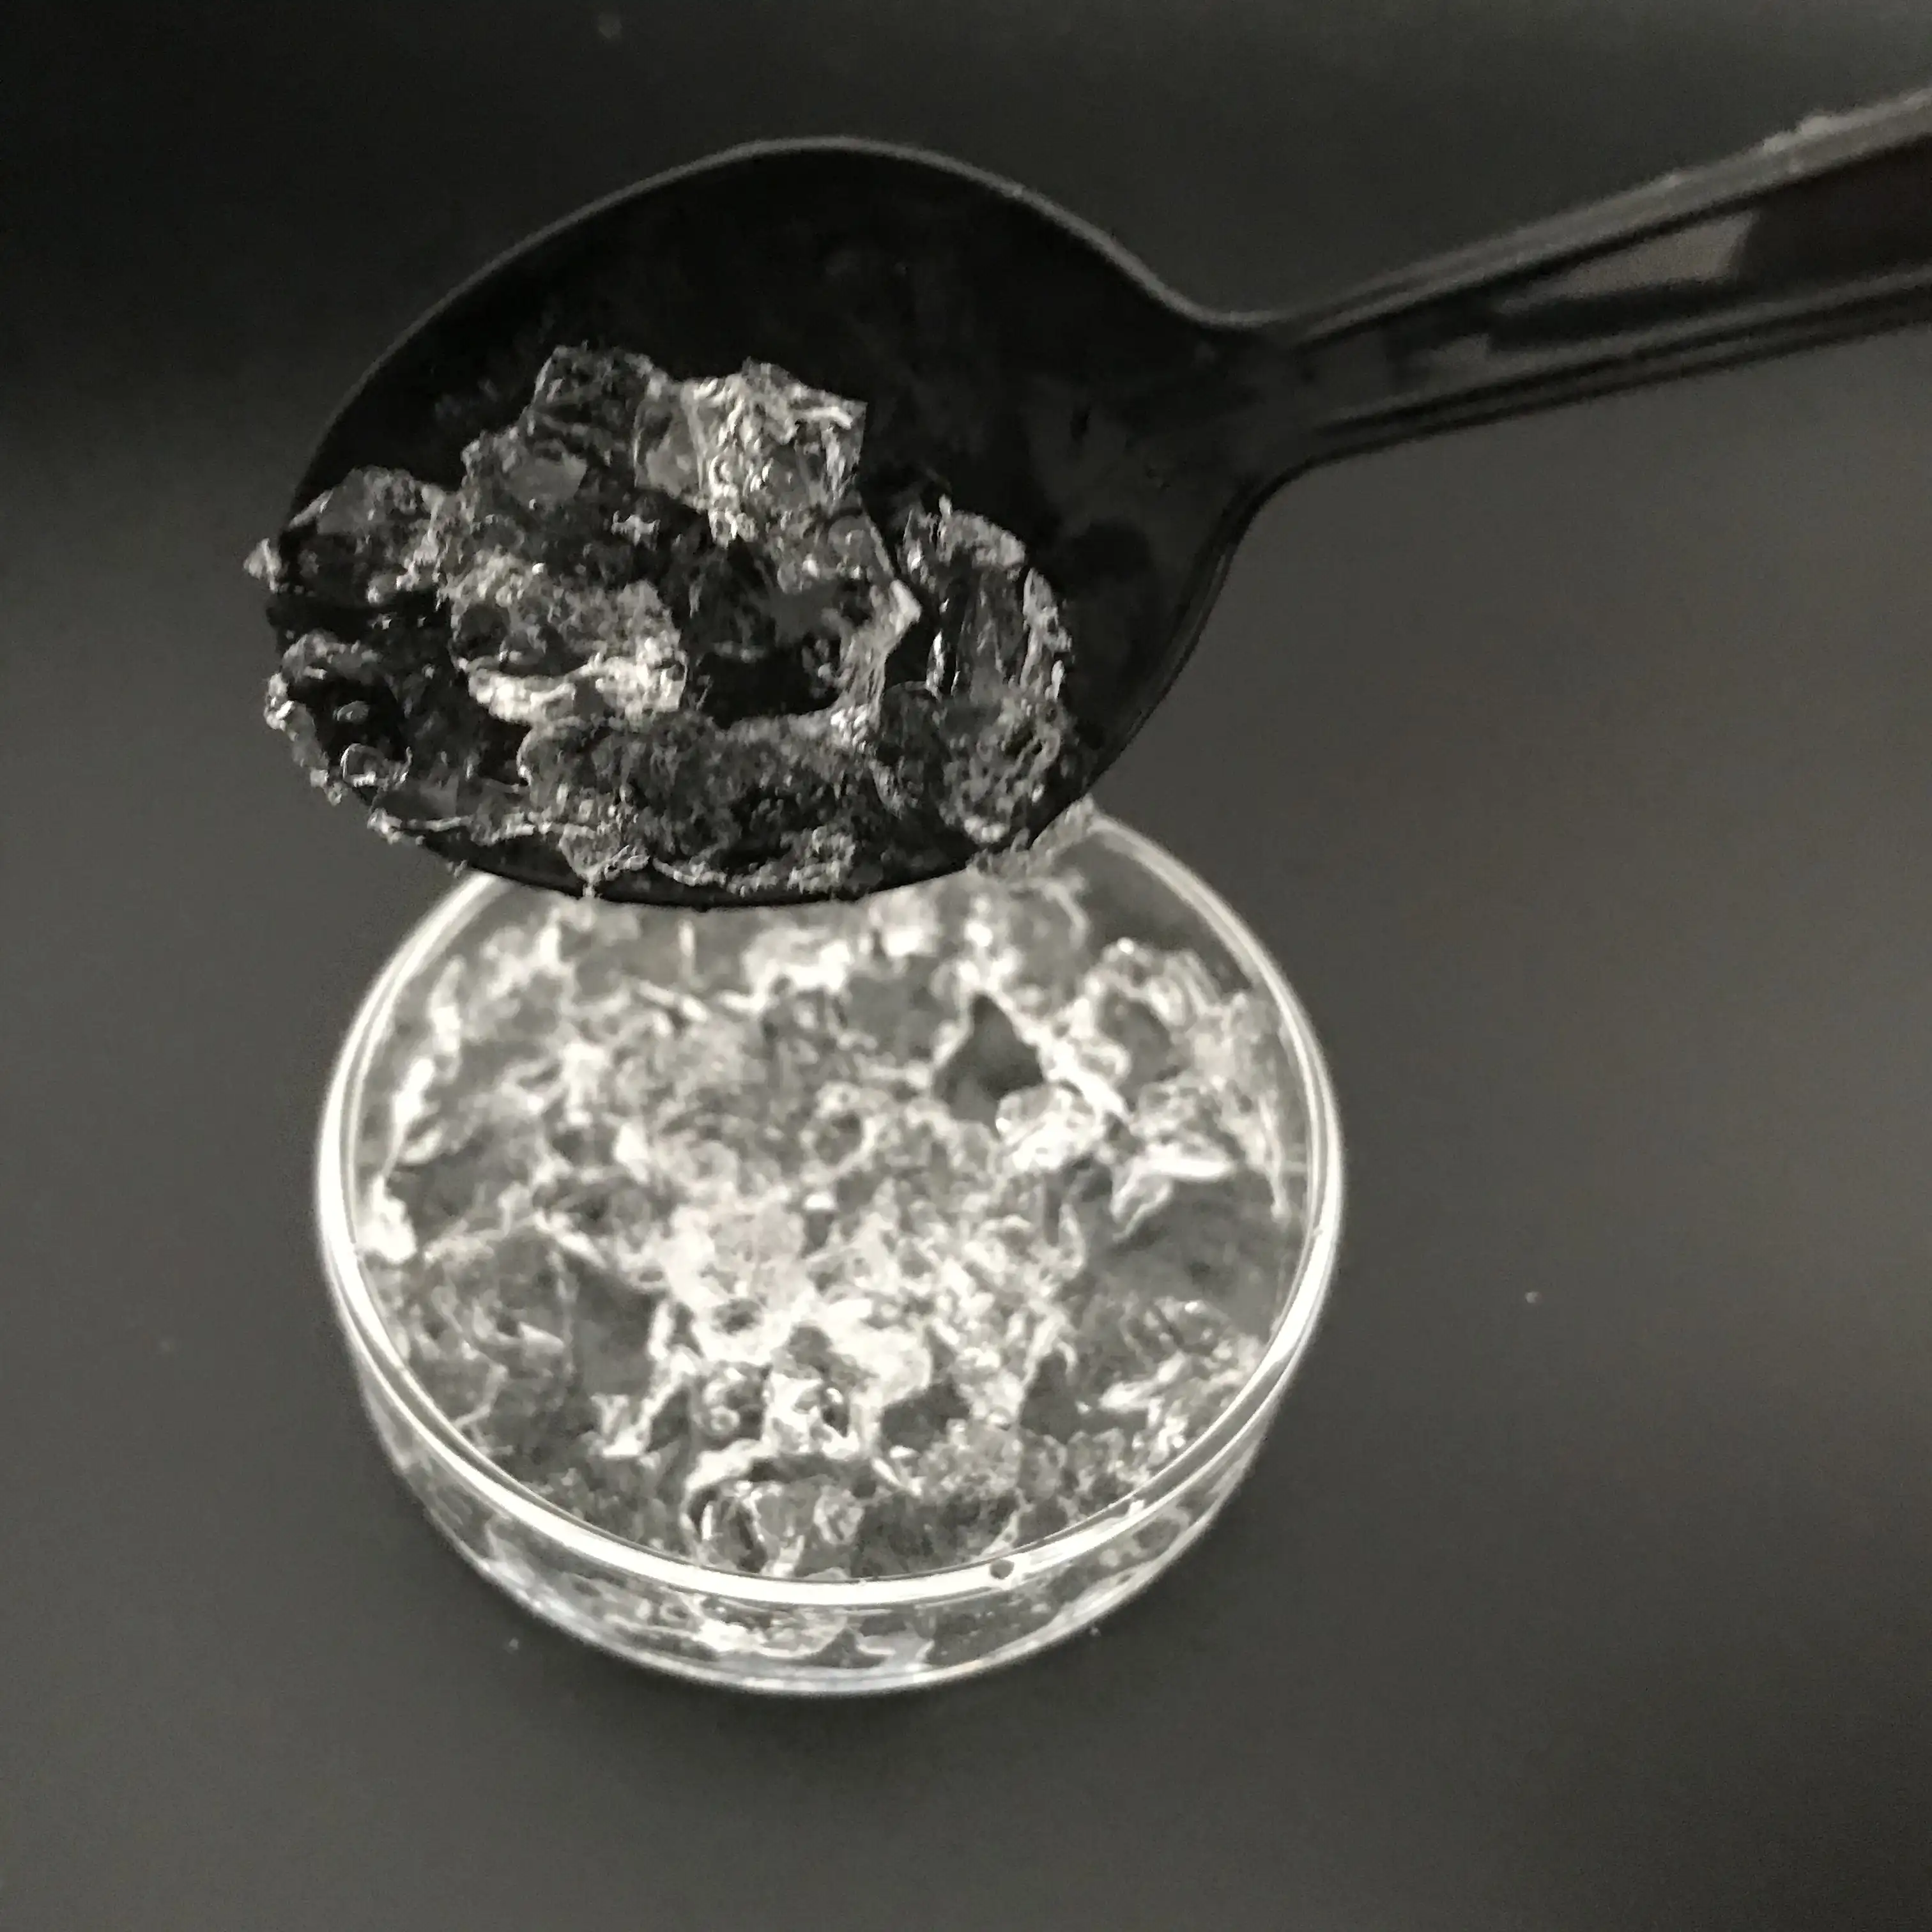 Kalium poly acryl at saft für landwirtschaft liche Zwecke